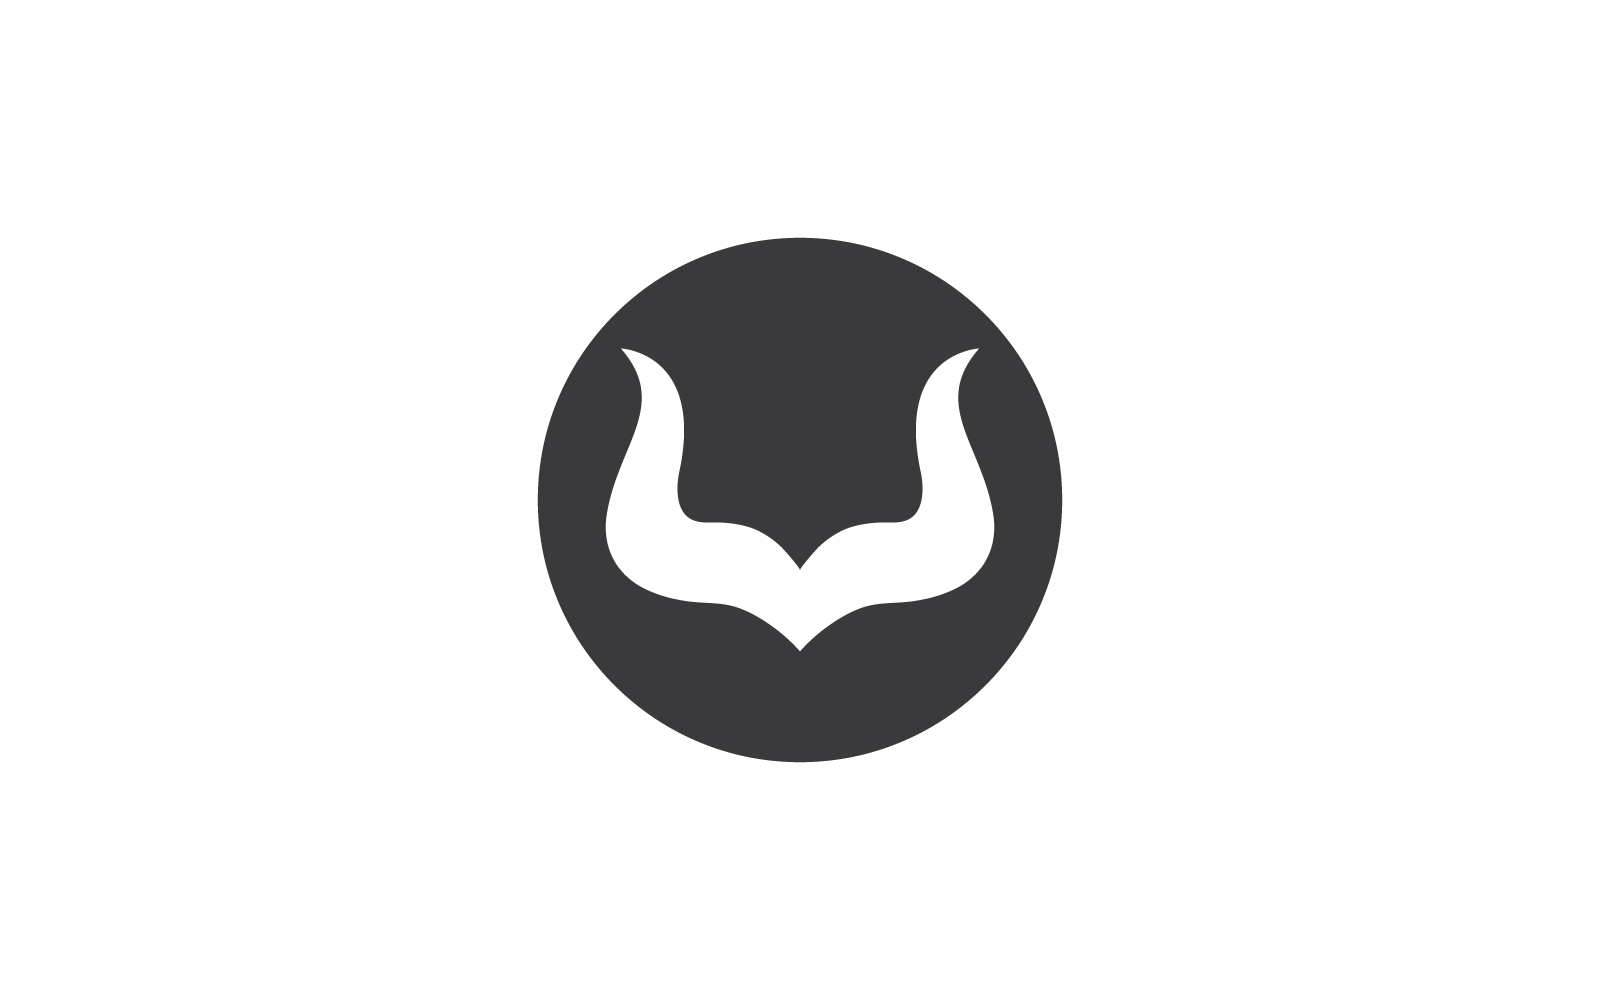 Horn logo vector flat design template